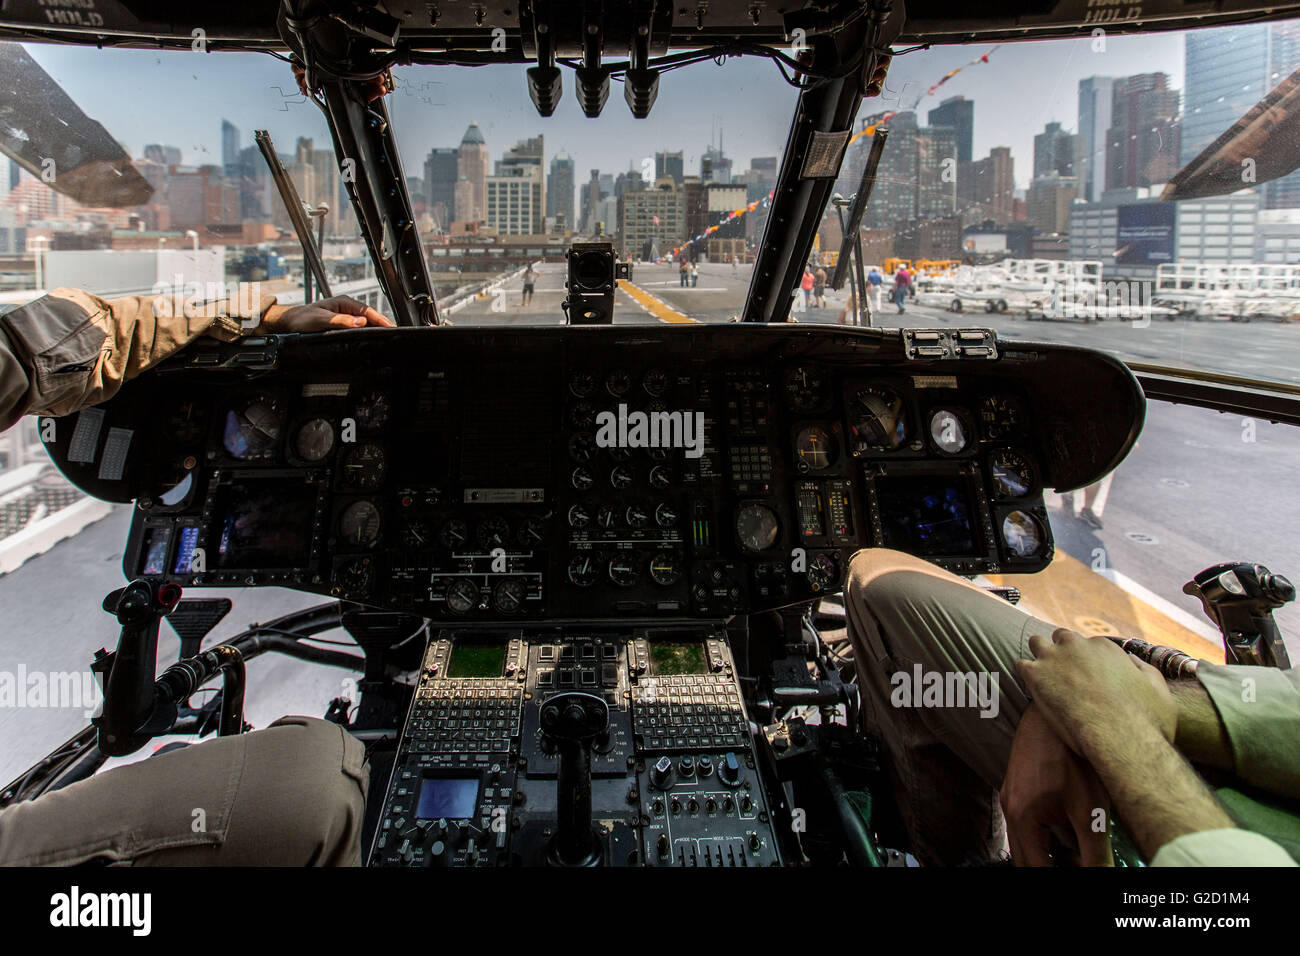 Nueva York, Estados Unidos. 27 de mayo de 2016. Nueva York, Estados Unidos. 27 de mayo de 2016. Foto tomada el 27 de mayo de 2016, demuestra la cabina de un Sikorsky tipo CH-53E Super Stallion helicóptero a bordo del USS Bataan (LHD-5), Avispa clase de buque de asalto anfibio, durante la 28ª Semana Anual de la flota de Nueva York, en Nueva York, Estados Unidos. En Nueva York la Semana de la flota tiene lugar a partir del 25 de mayo al 30 de mayo, donde centenares de hombres y mujeres en las Fuerzas Armadas, visita a la ciudad de Nueva York como parte de las conmemoraciones del Día Conmemorativo. Crédito: Li Muzi/Xinhua/Alamy Live News Foto de stock